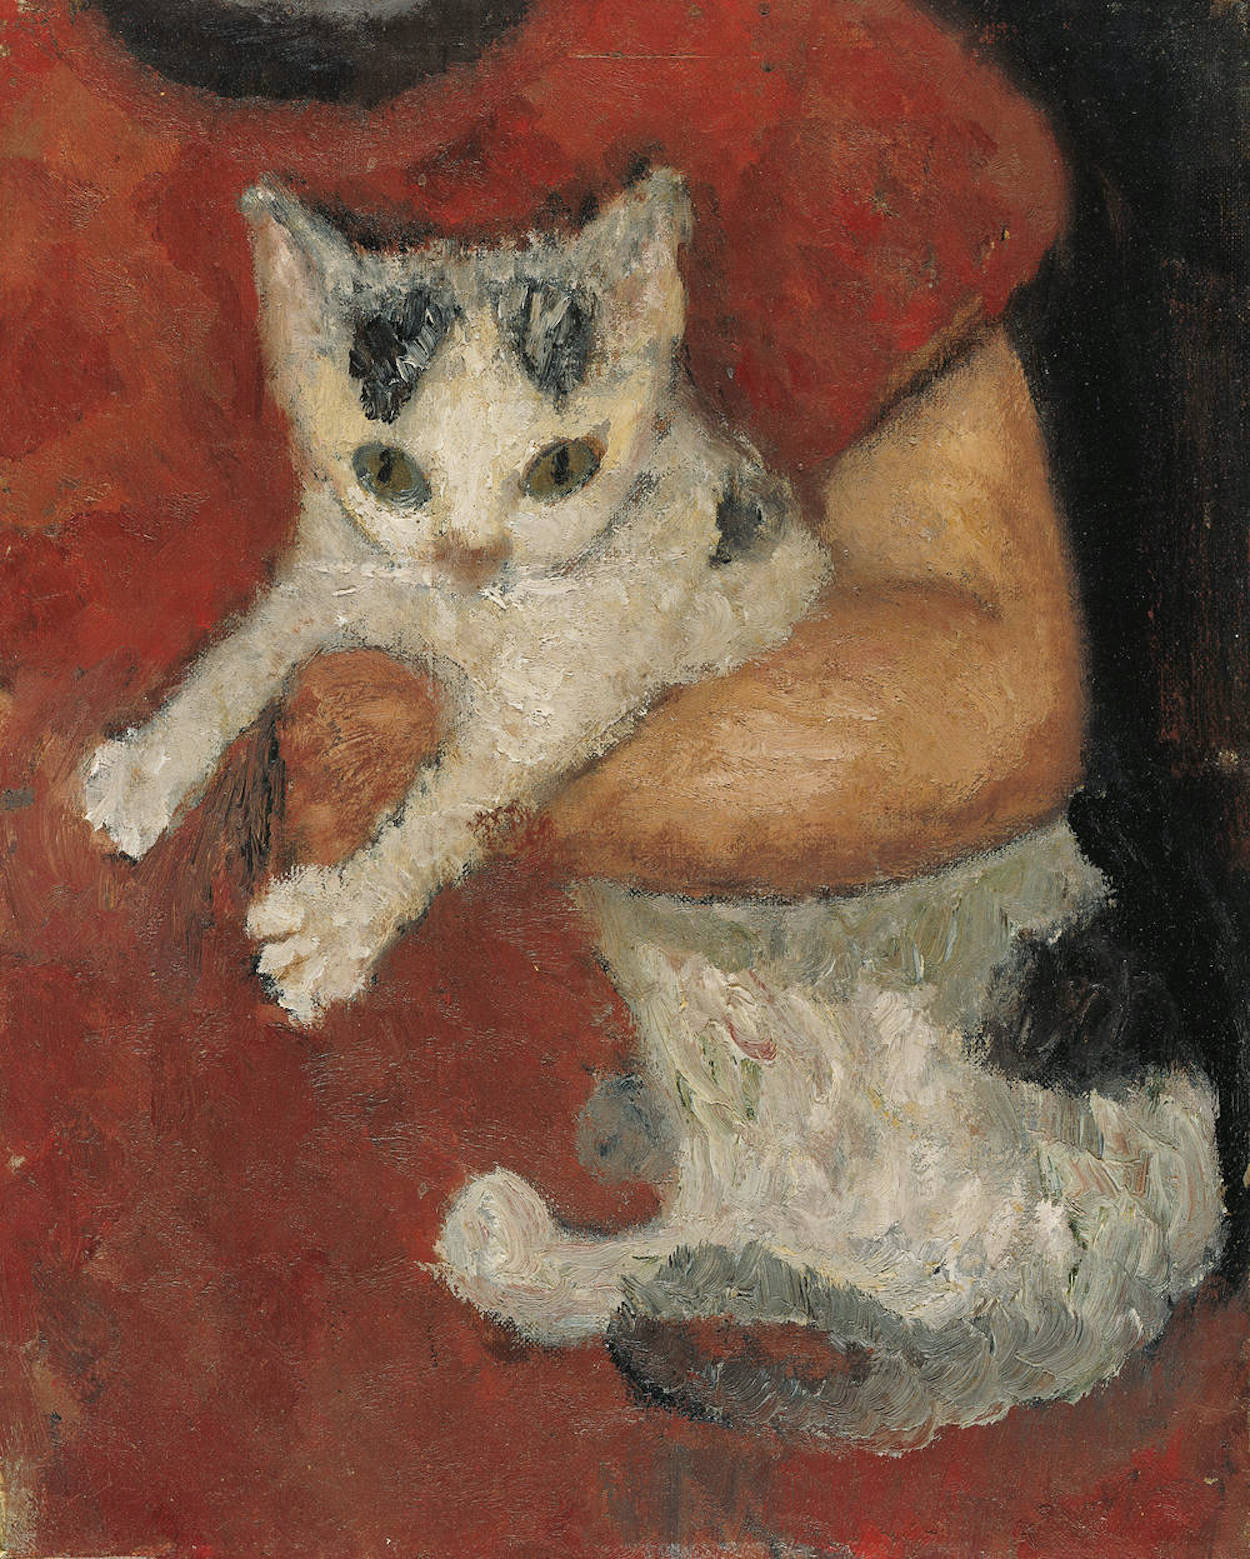 子供の腕に抱かれた猫 by Paula Modersohn-Becker - 1903年 - 32.5 x 25.6 cm 